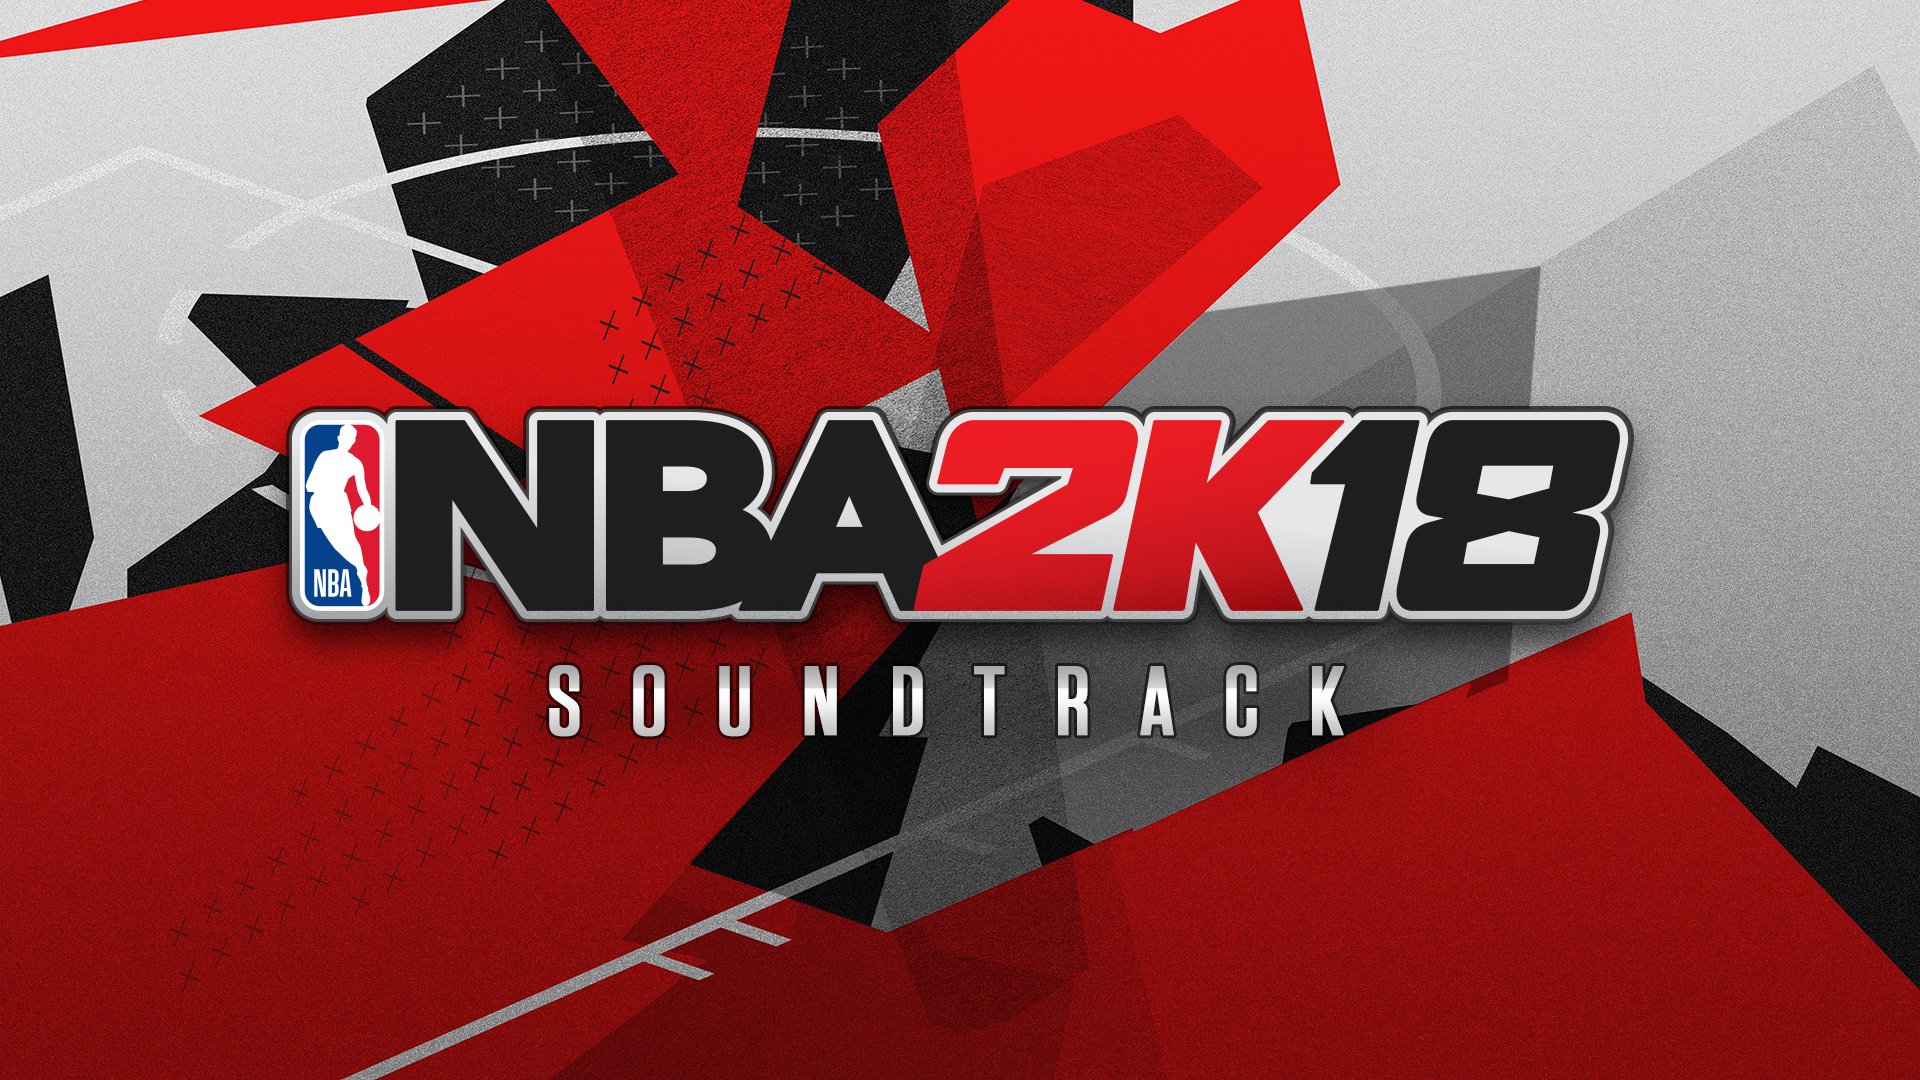 NBA 2K18 rend hommage à Mobb Deep pour son premier trailer